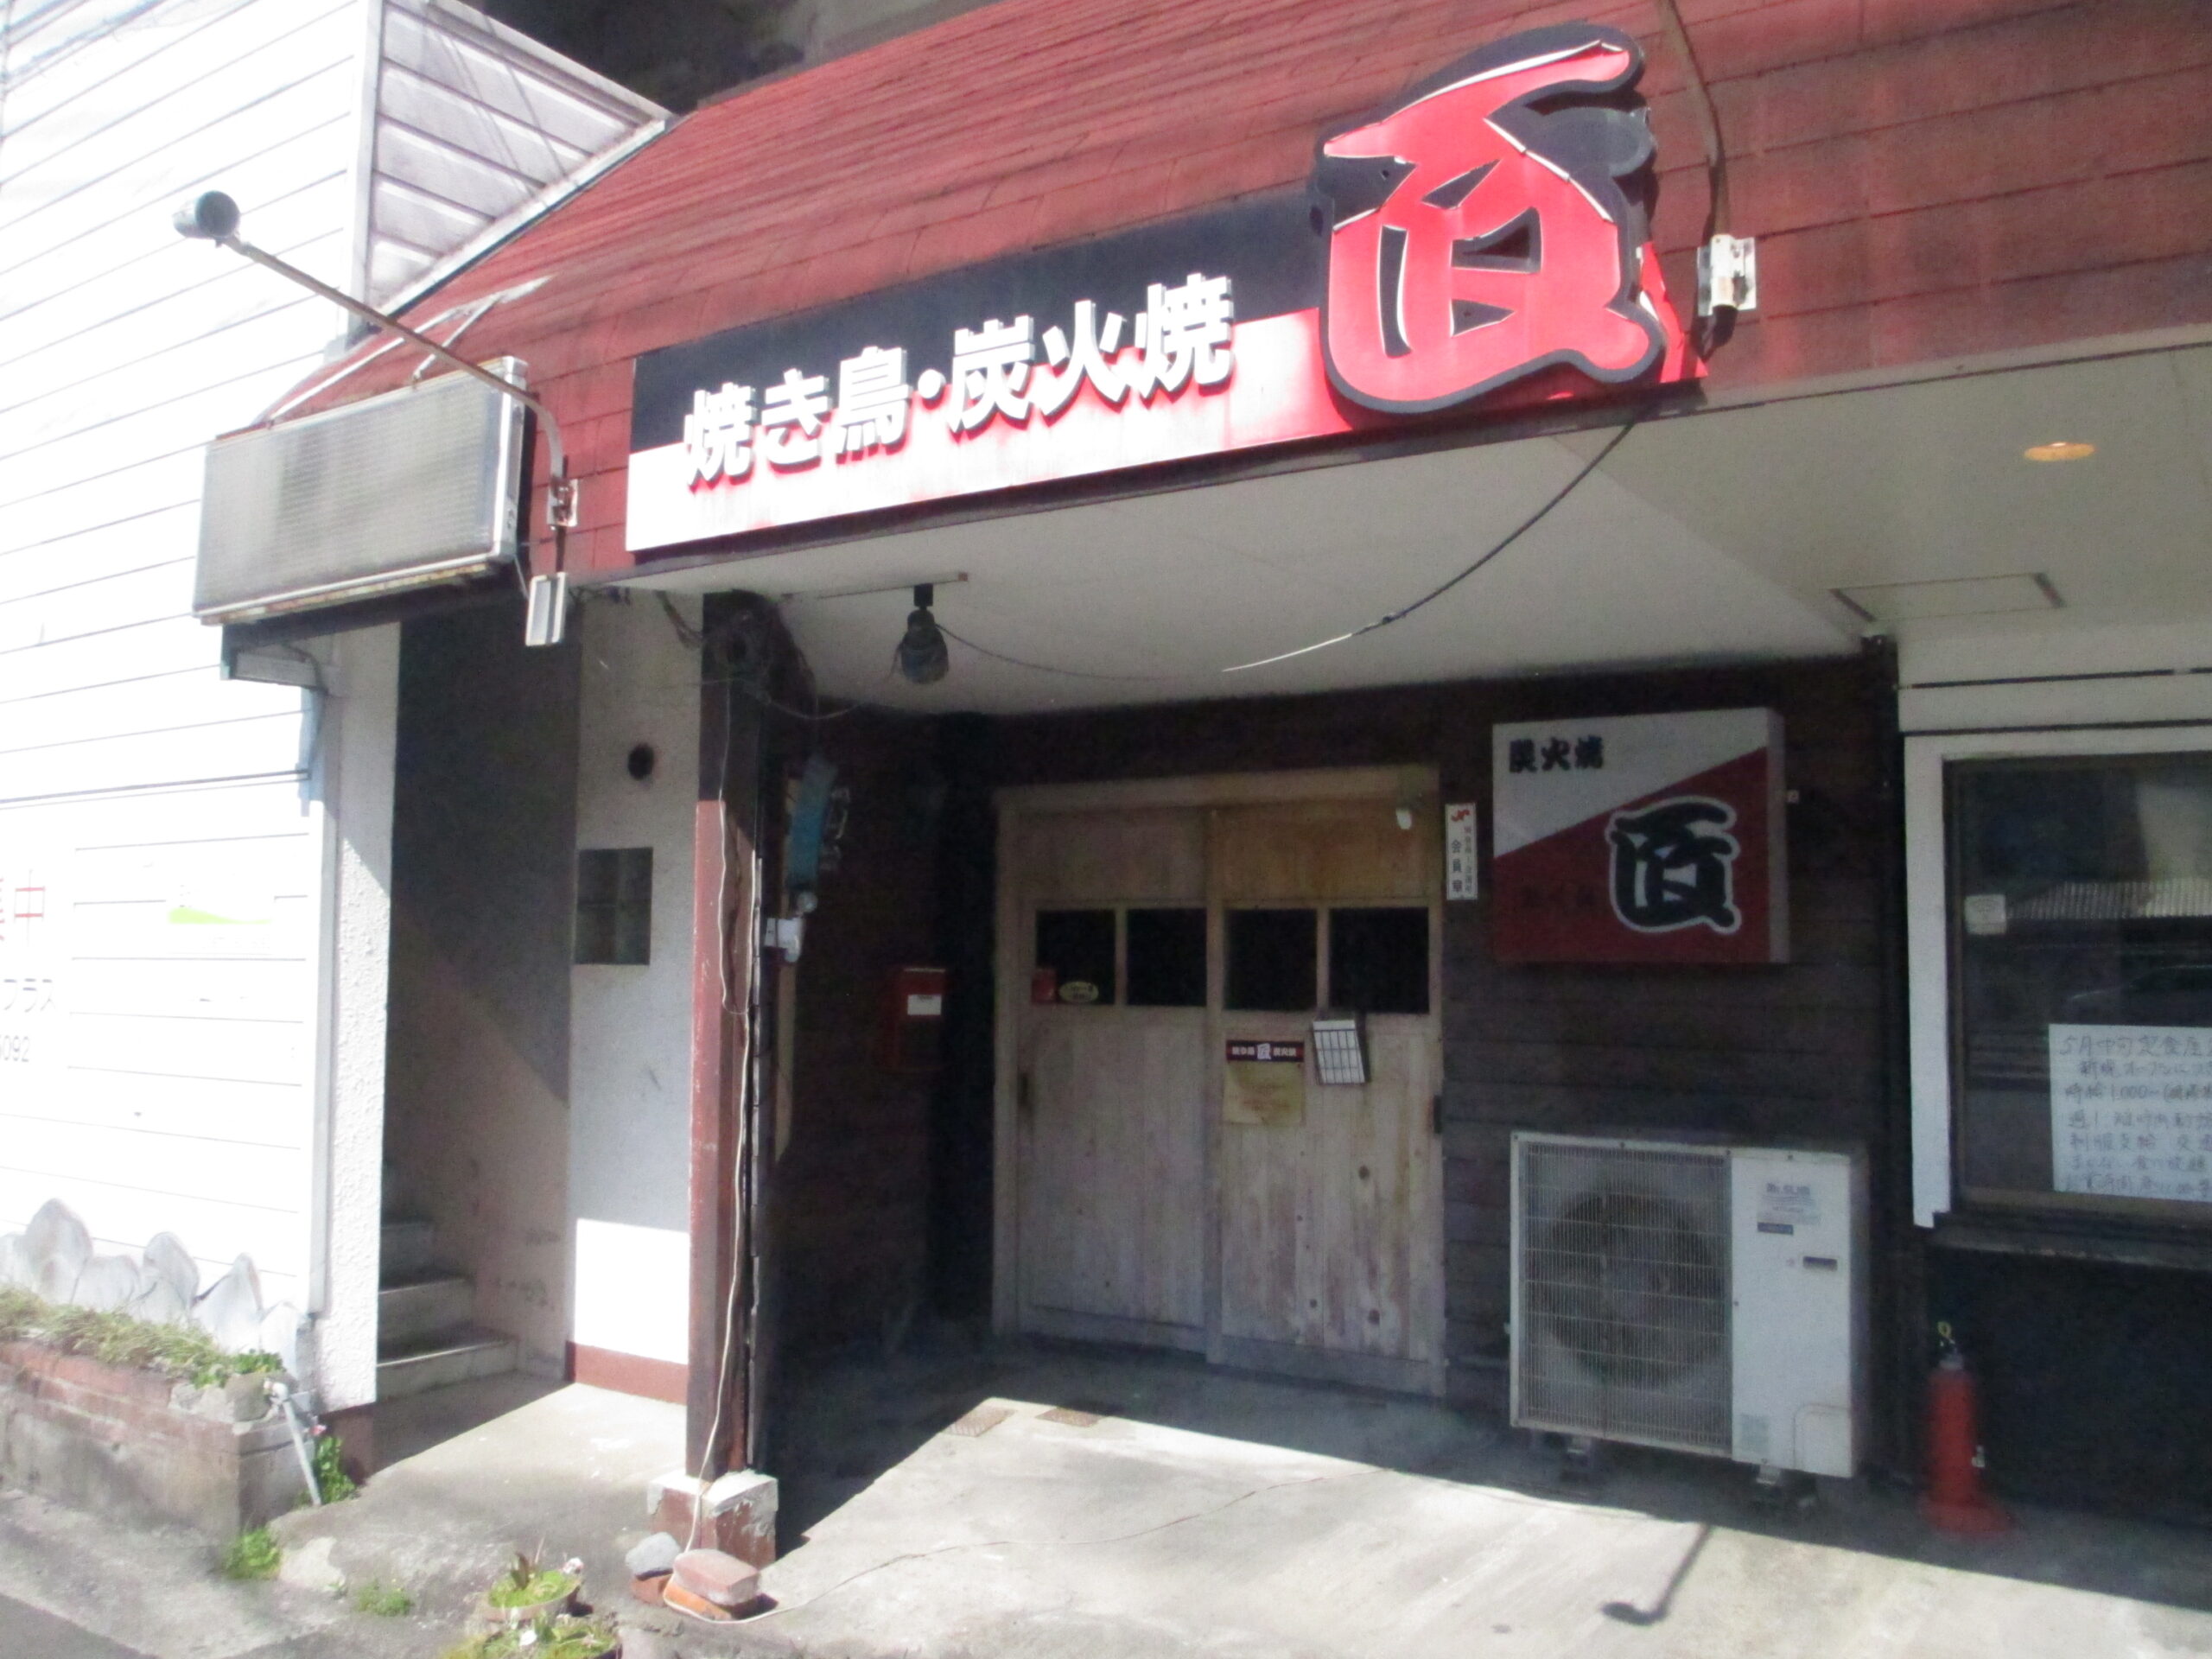 極楽荘1F 店舗正面写真、「匠」看板は既に撤去済です。 貸店舗から亀川駅まで徒歩6分ほど